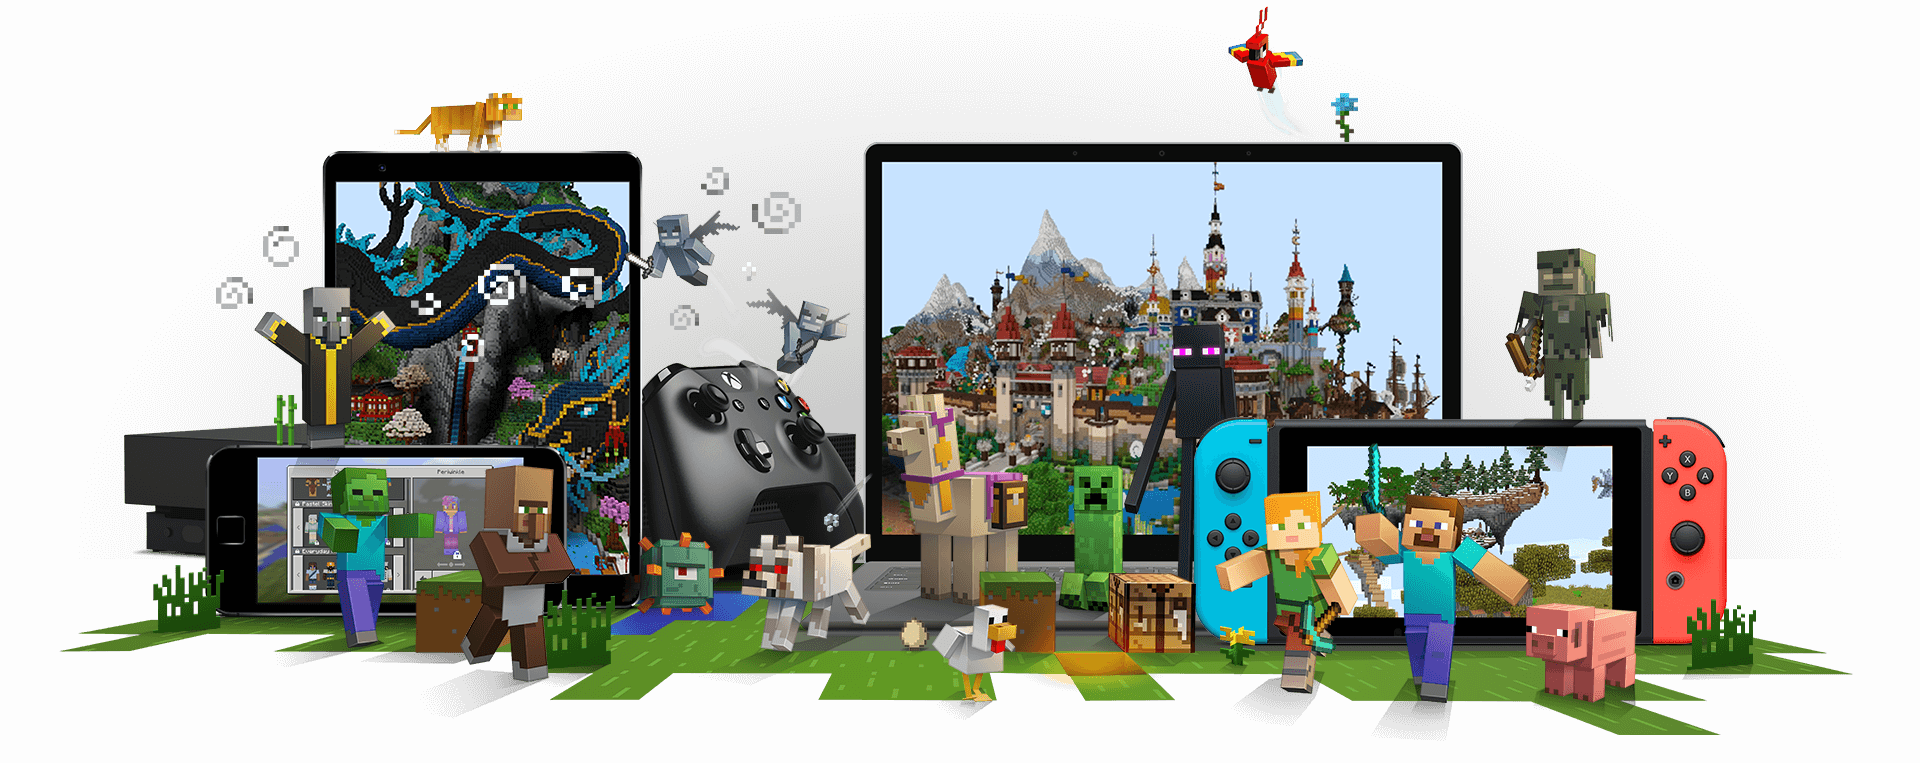 Les personnages de Minecraft entourent les appareils sur lesquels il est possible de jouer à Minecraft, notamment une Xbox, un téléphone mobile, un PC portable et une Nintendo Switch.